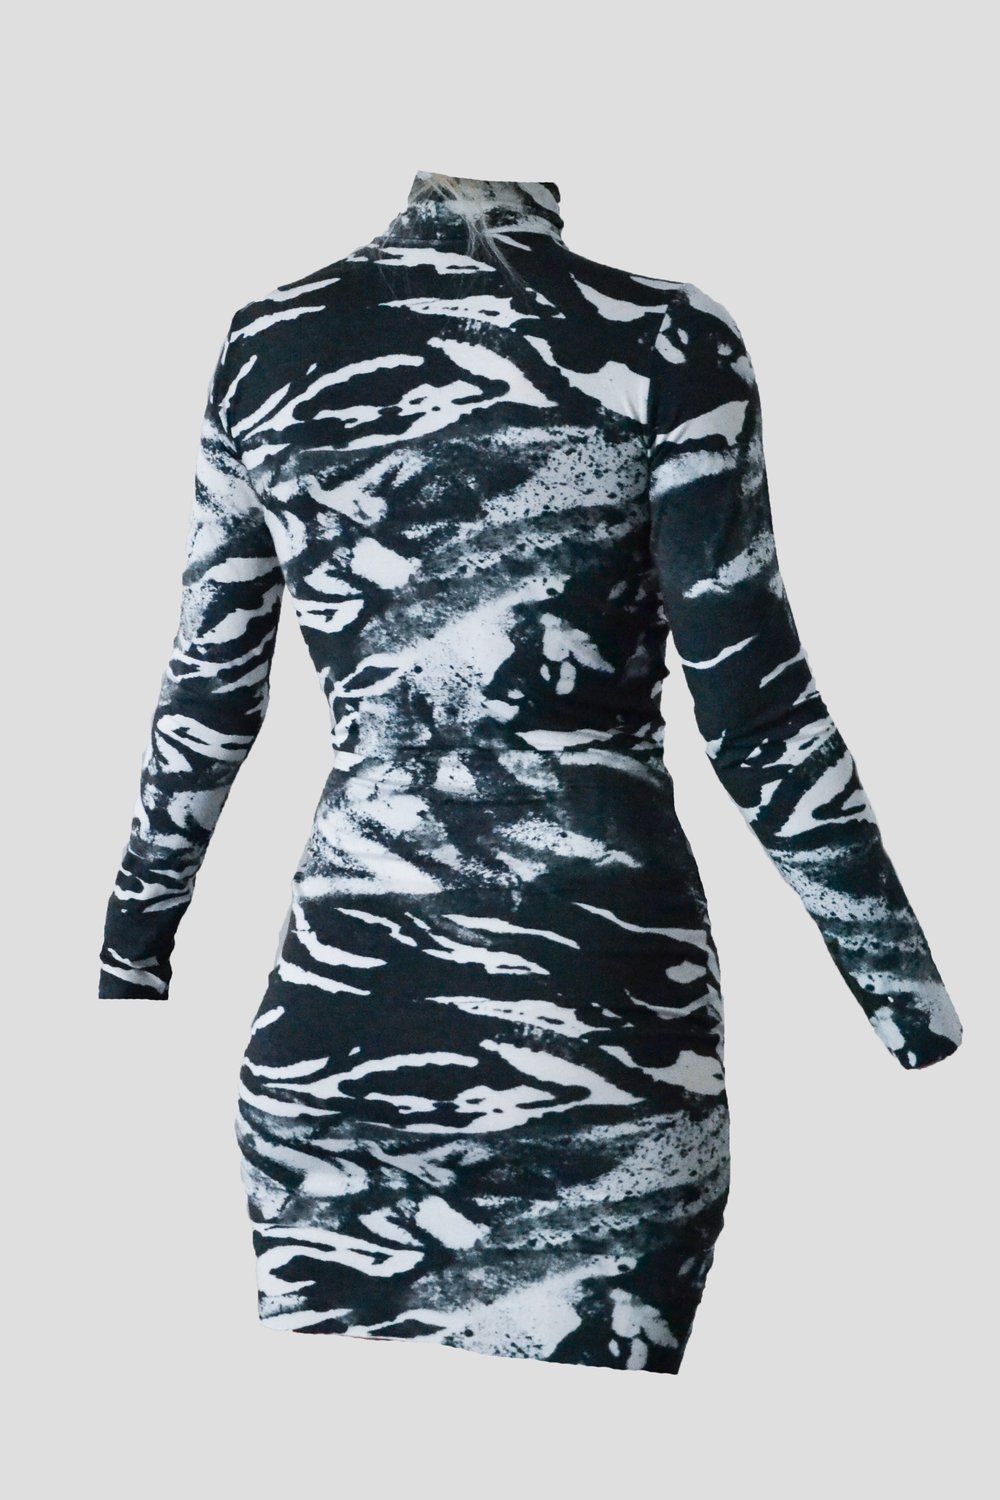 Image of Zebra Dress 